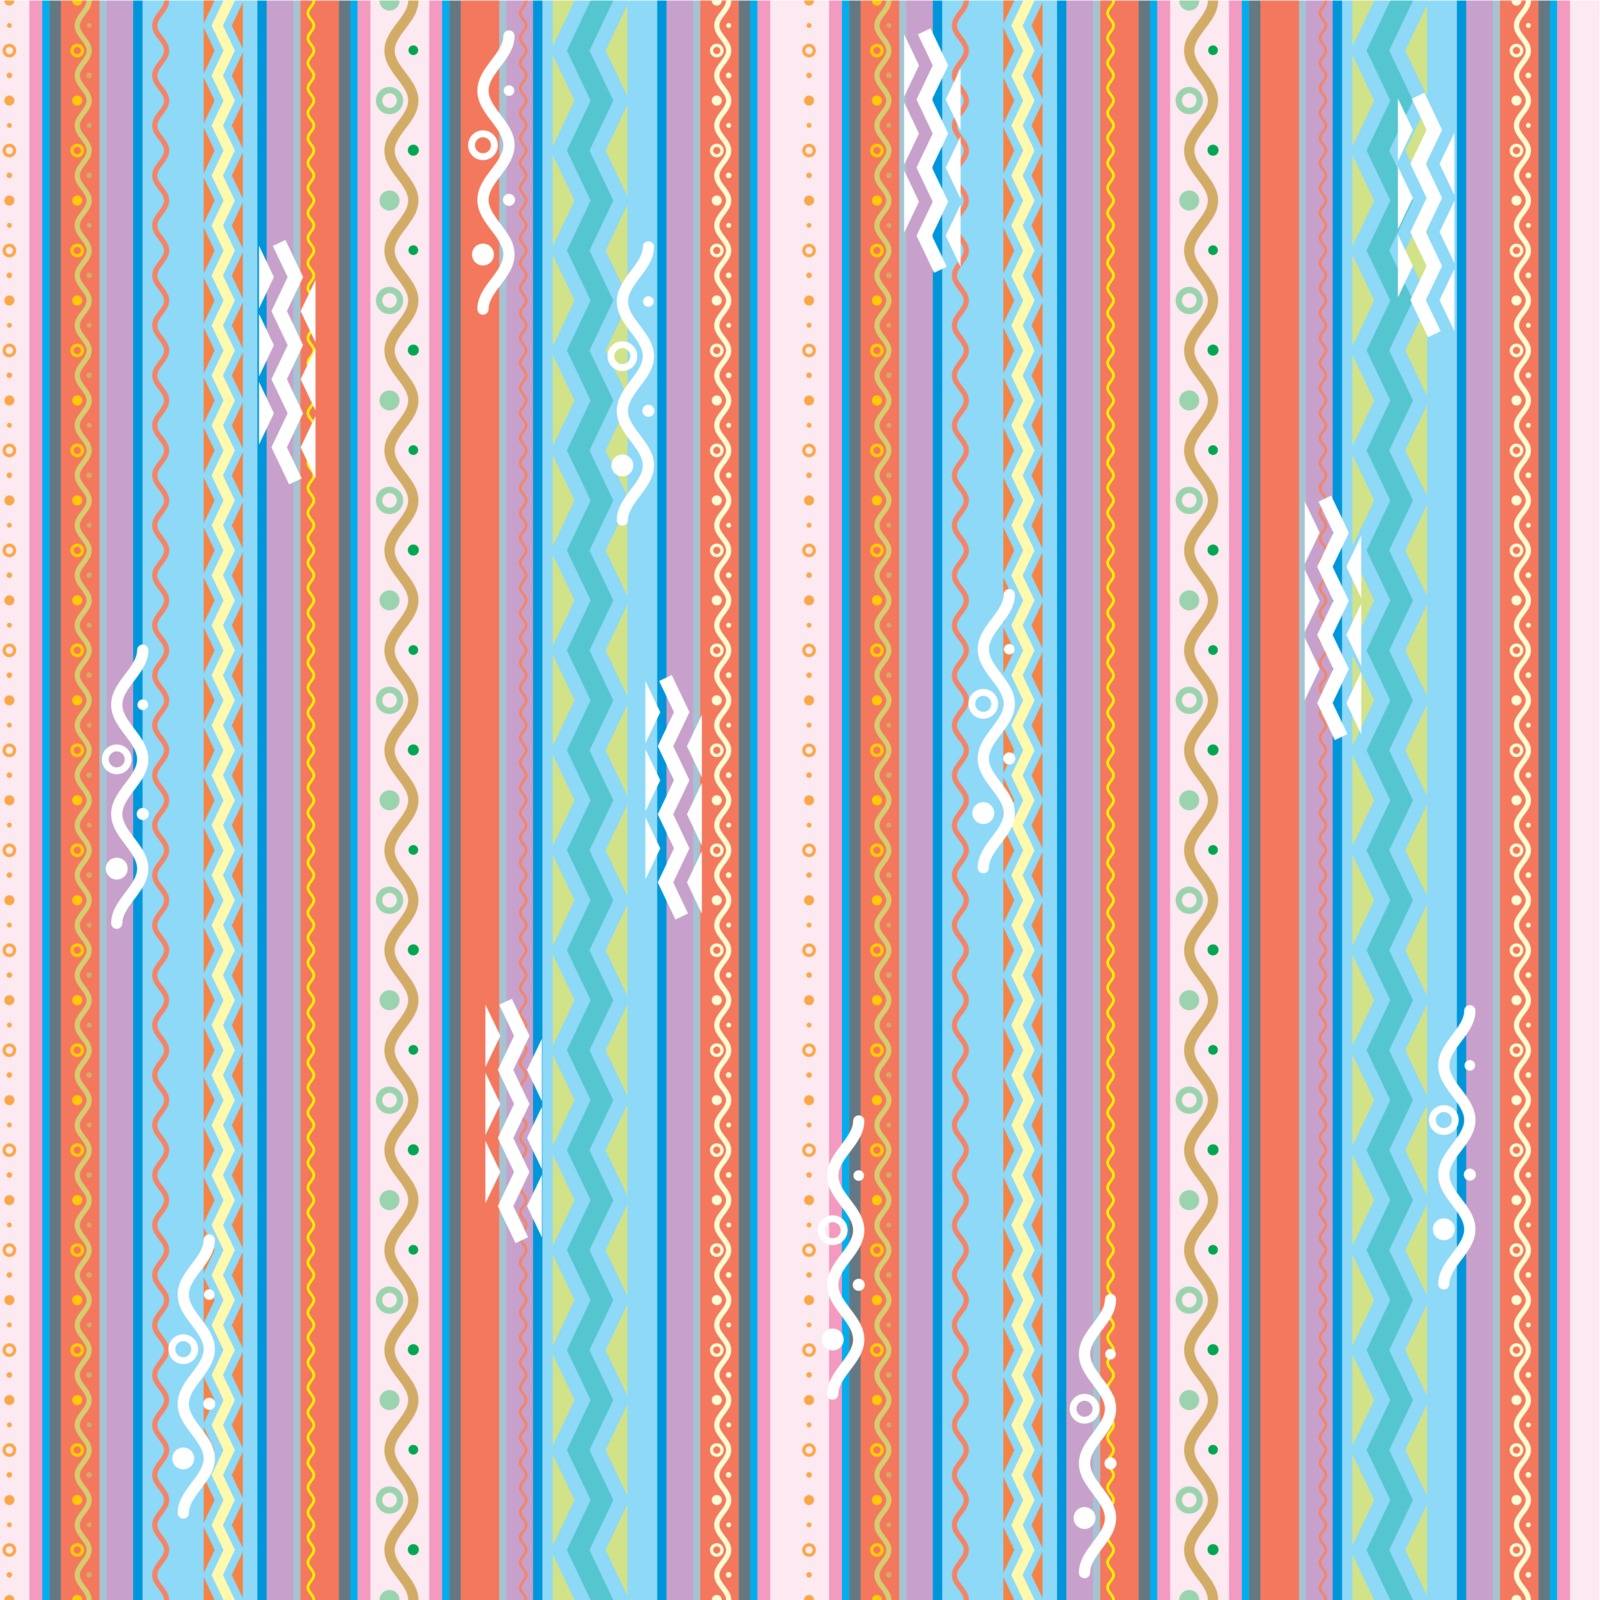 strip pattern by SanyaL